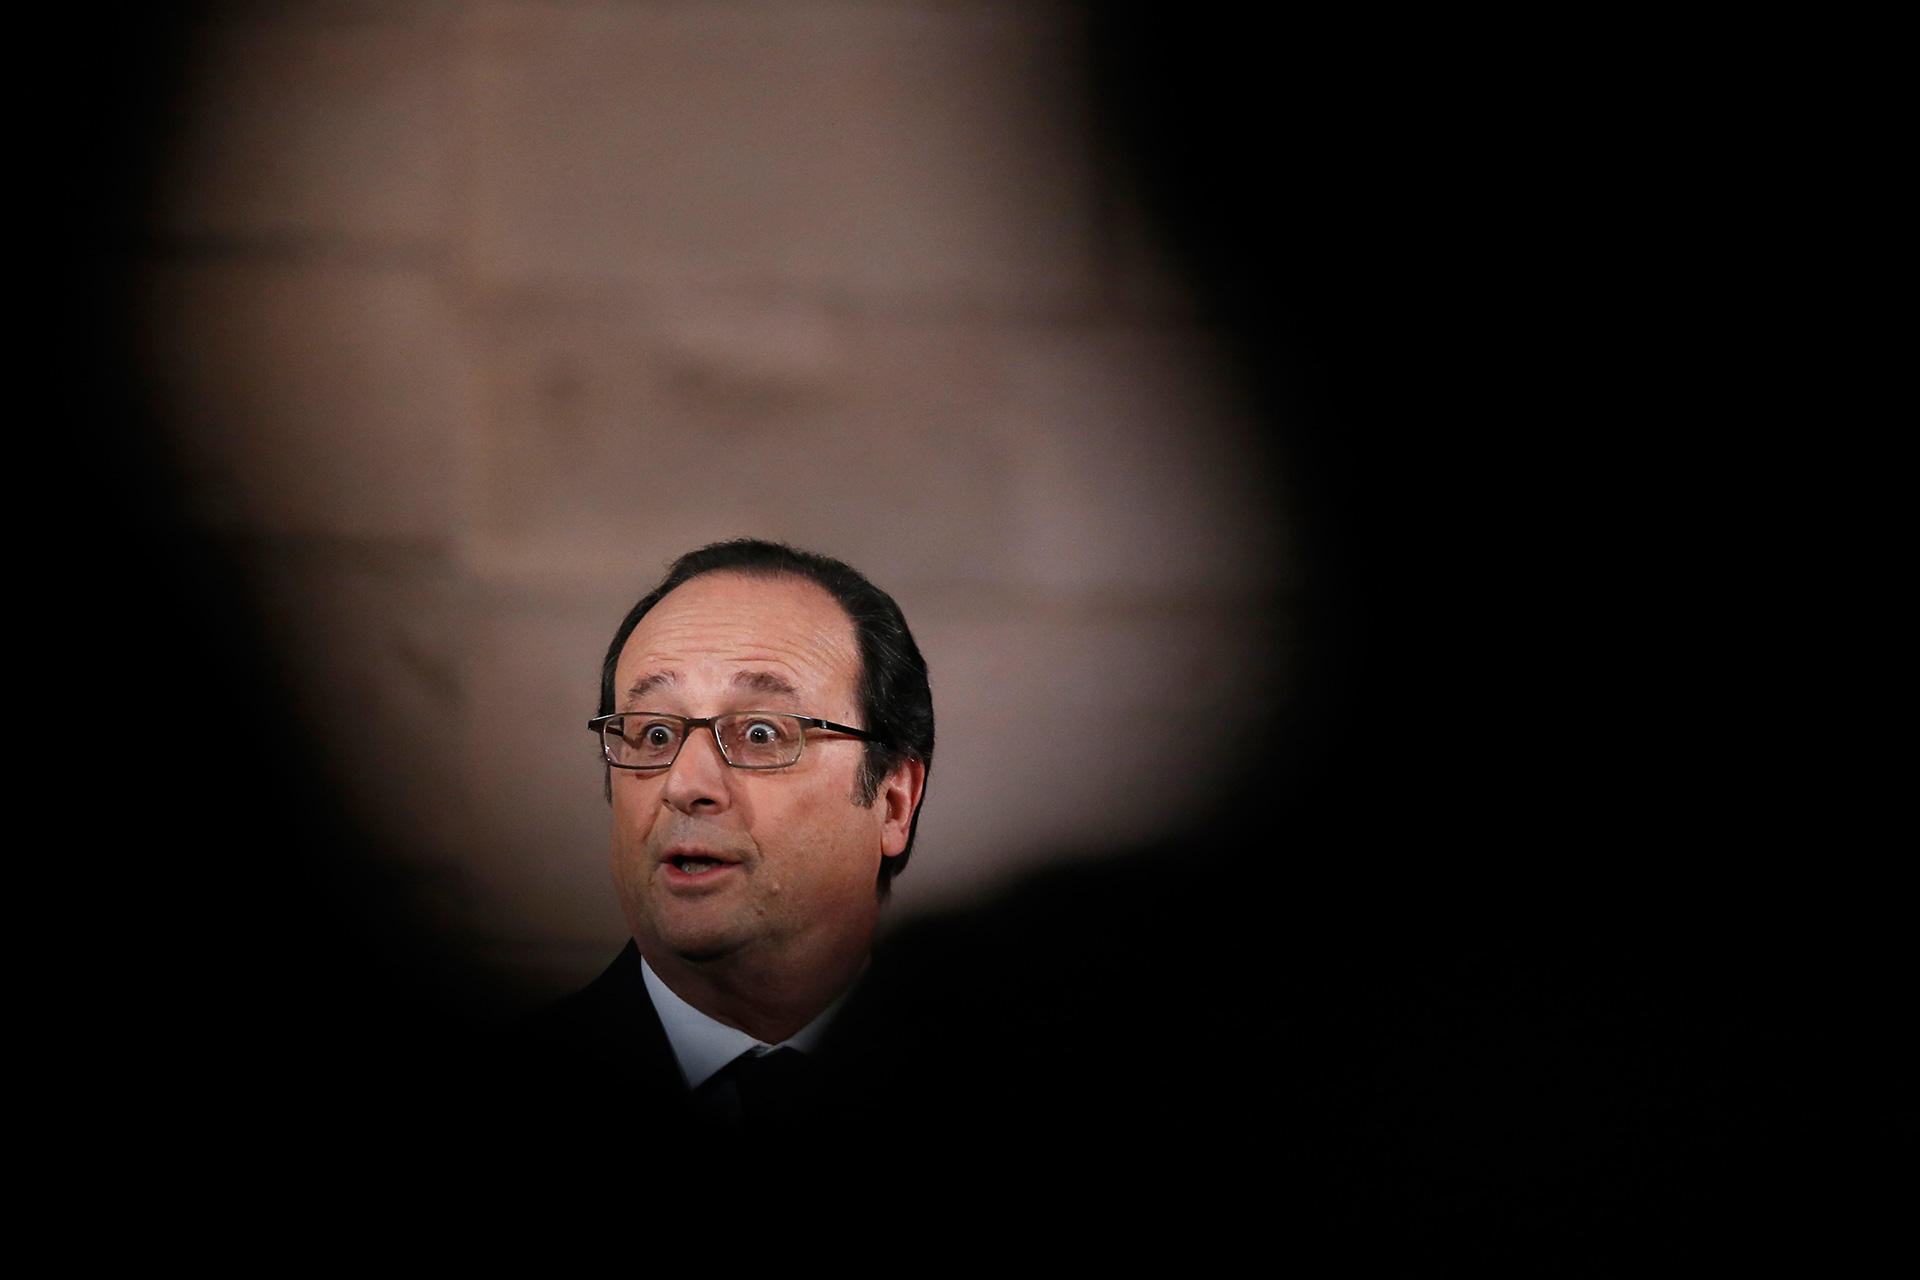 Un francotirador dispara a dos personas en un discurso de Hollande